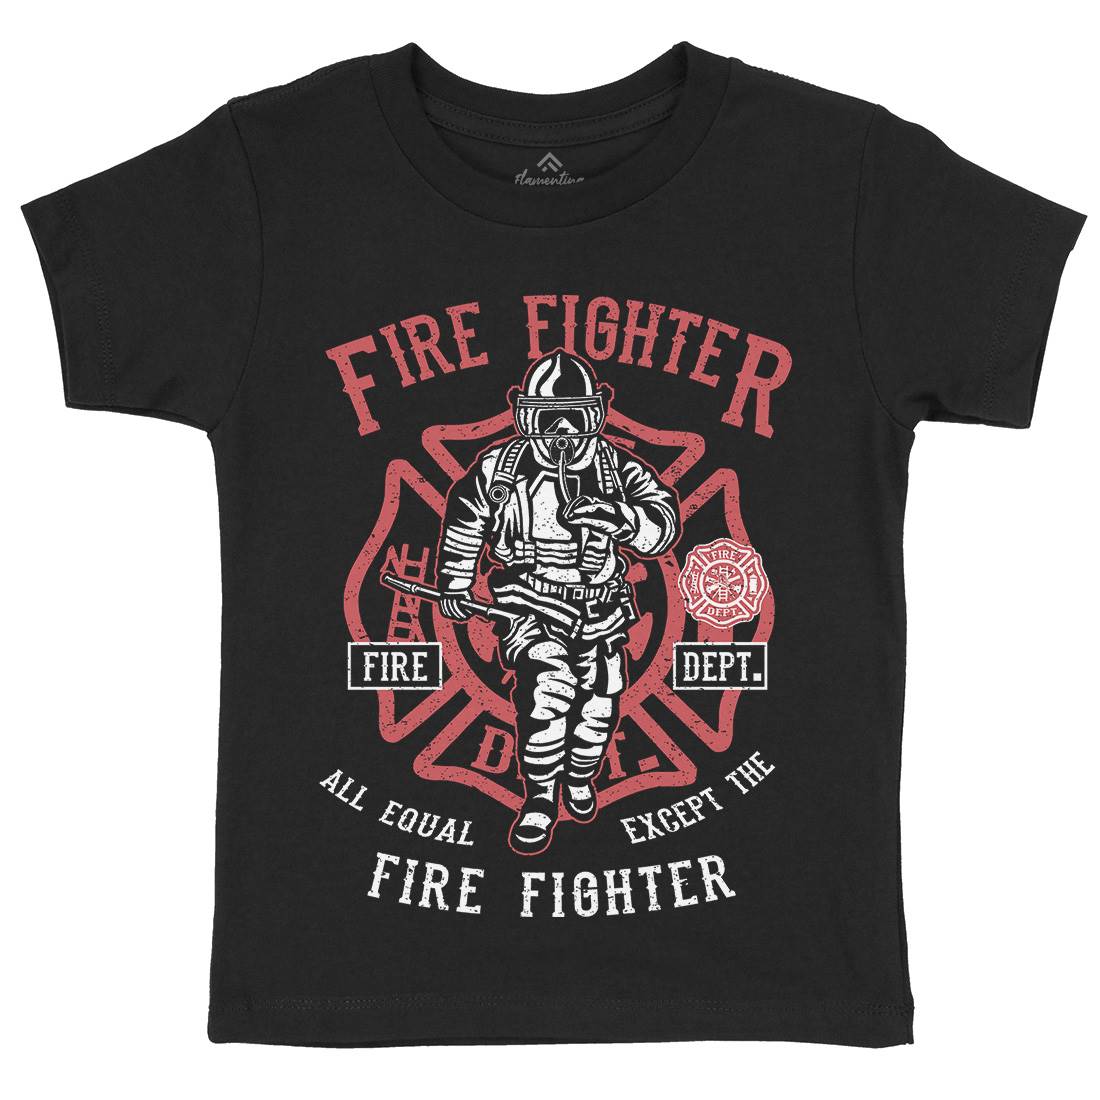 Fire Fighter Kids Crew Neck T-Shirt Firefighters A053